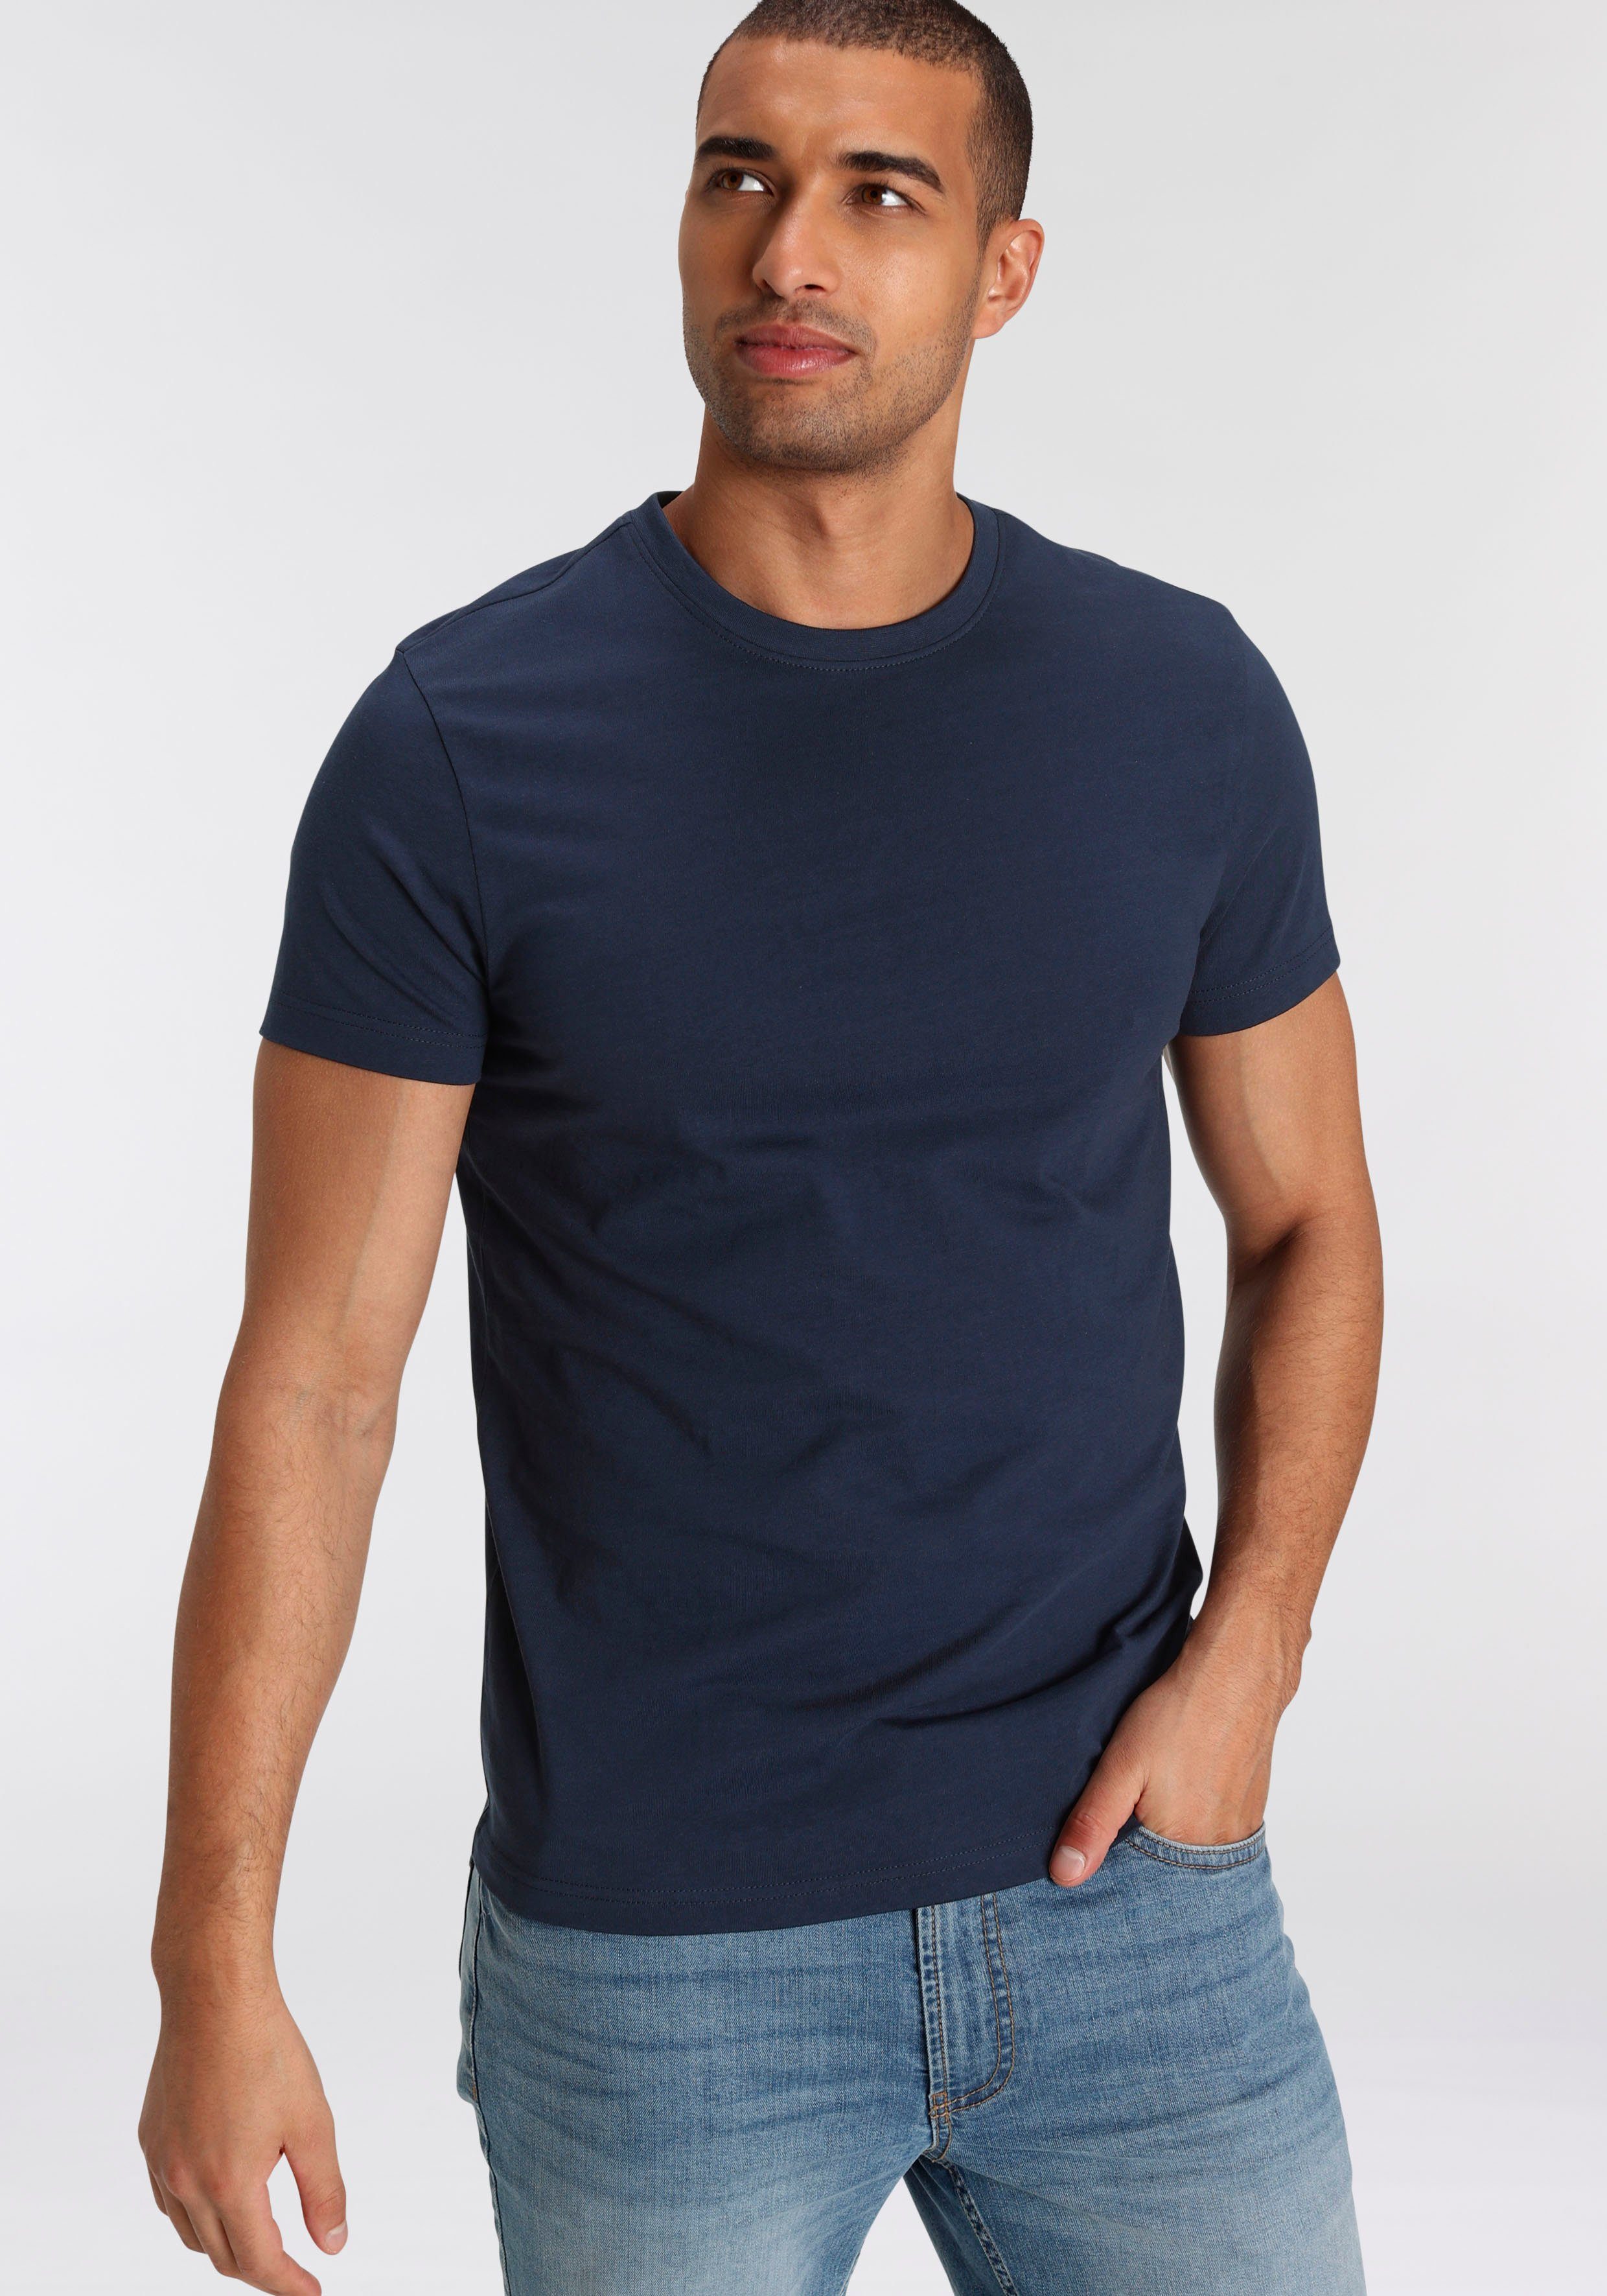 bordeaux, (Set, 3-tlg., T-Shirt aus 3er-Pack) Baumwolle schwarz reiner marine, AJC